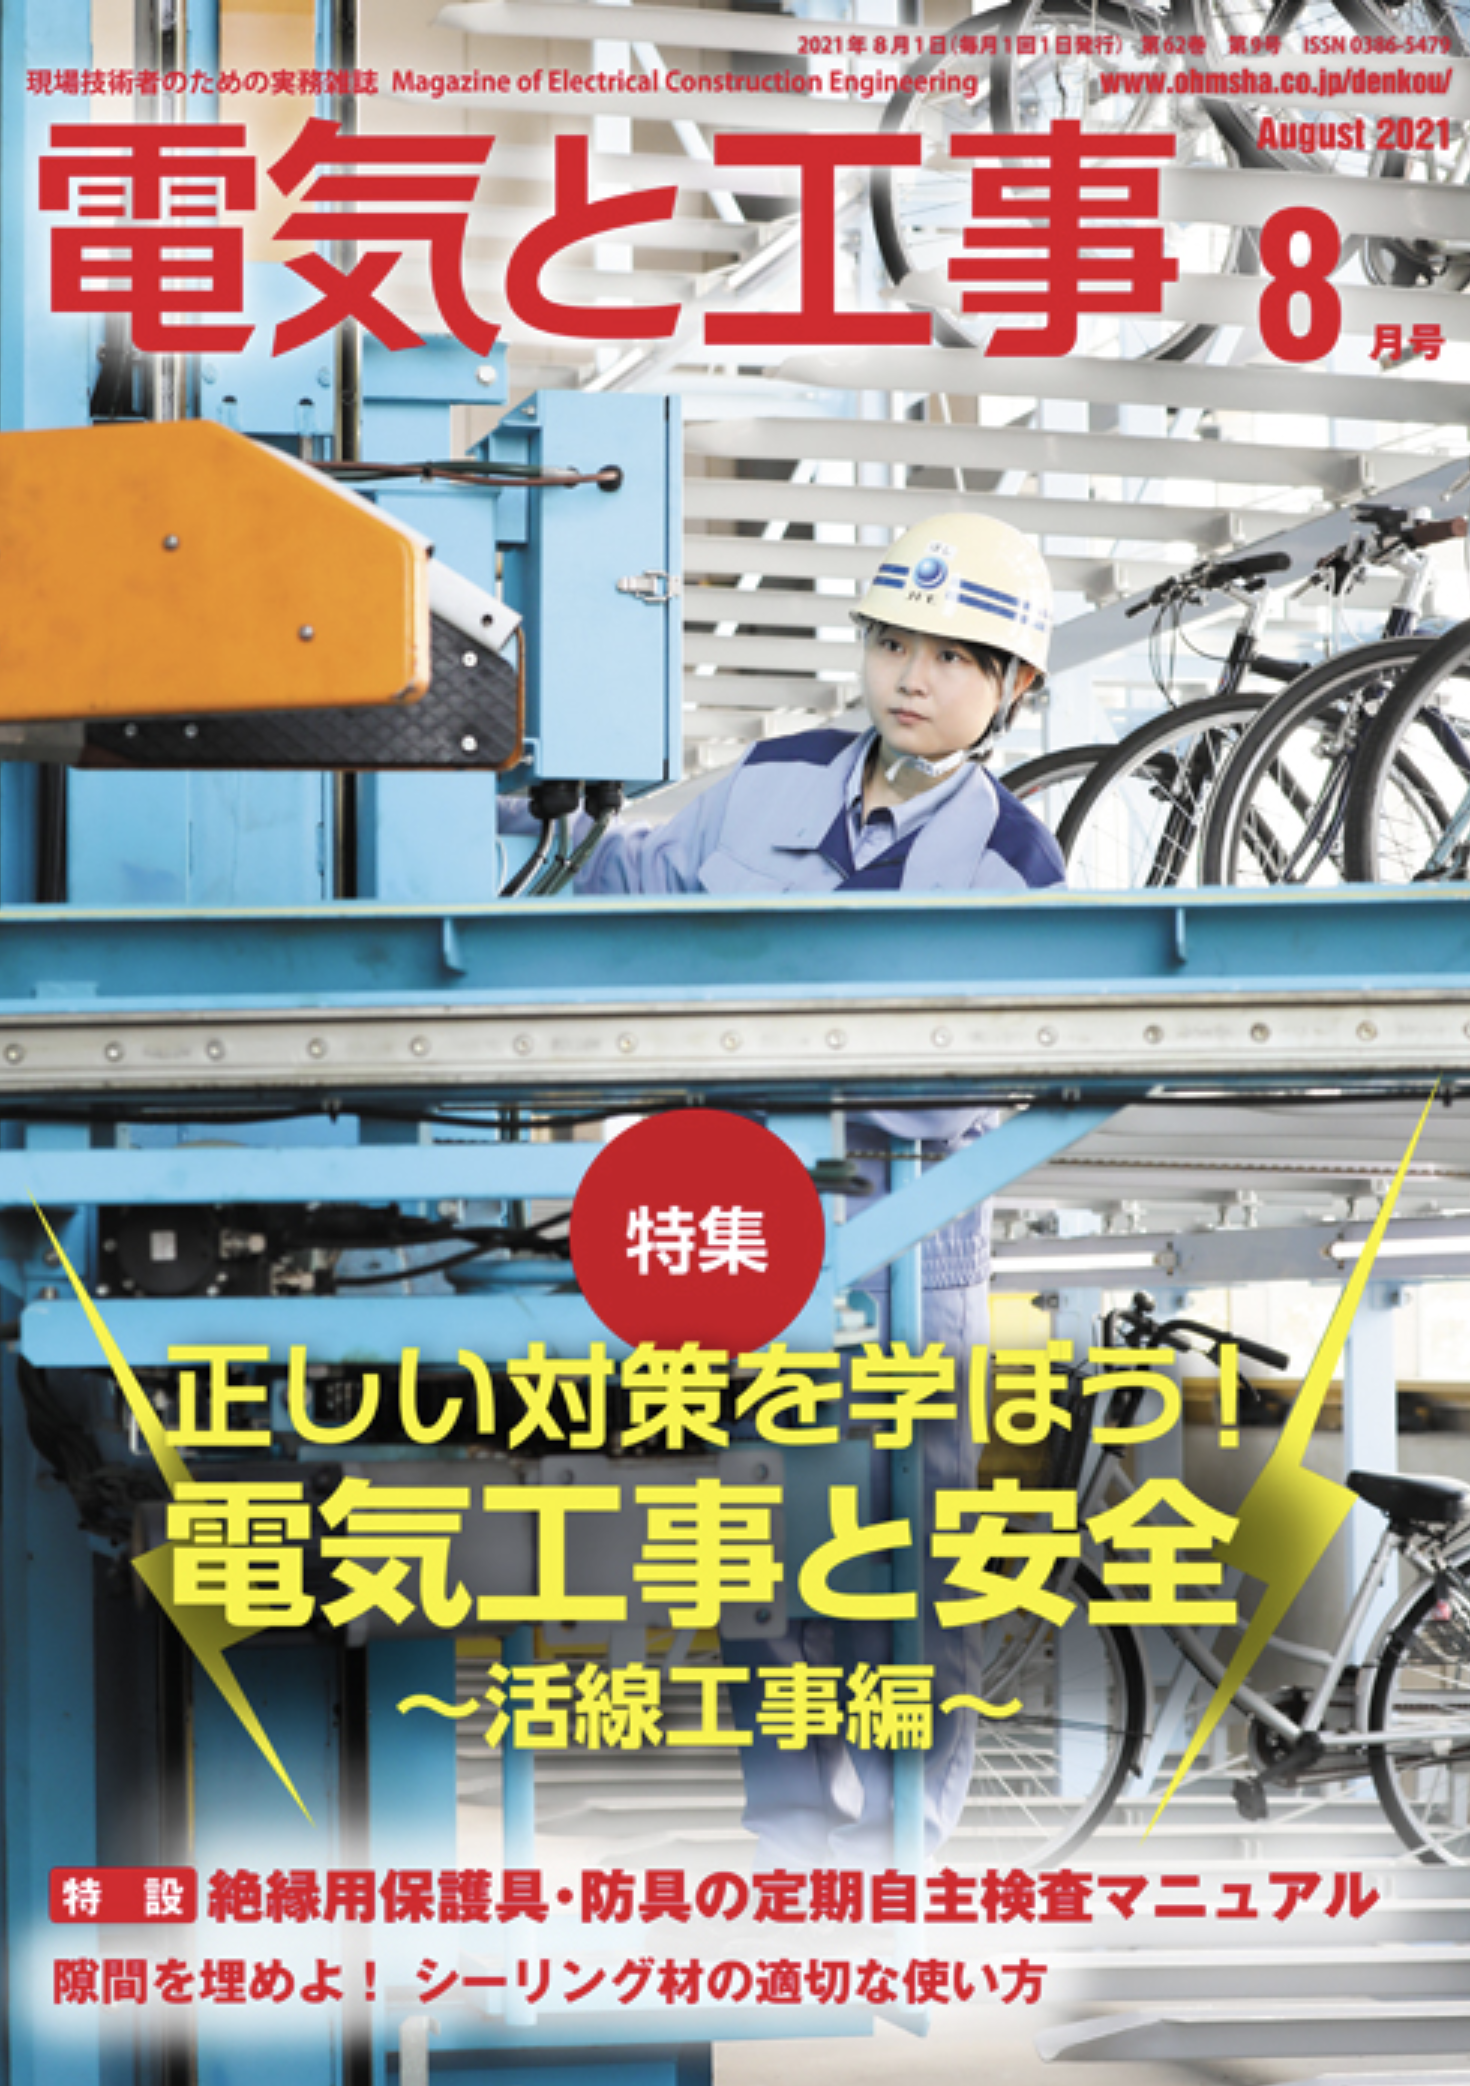 【新刊トピックス2021年7月】電気と工事 2021年8月号 (第62巻第9号通巻816号)の画像